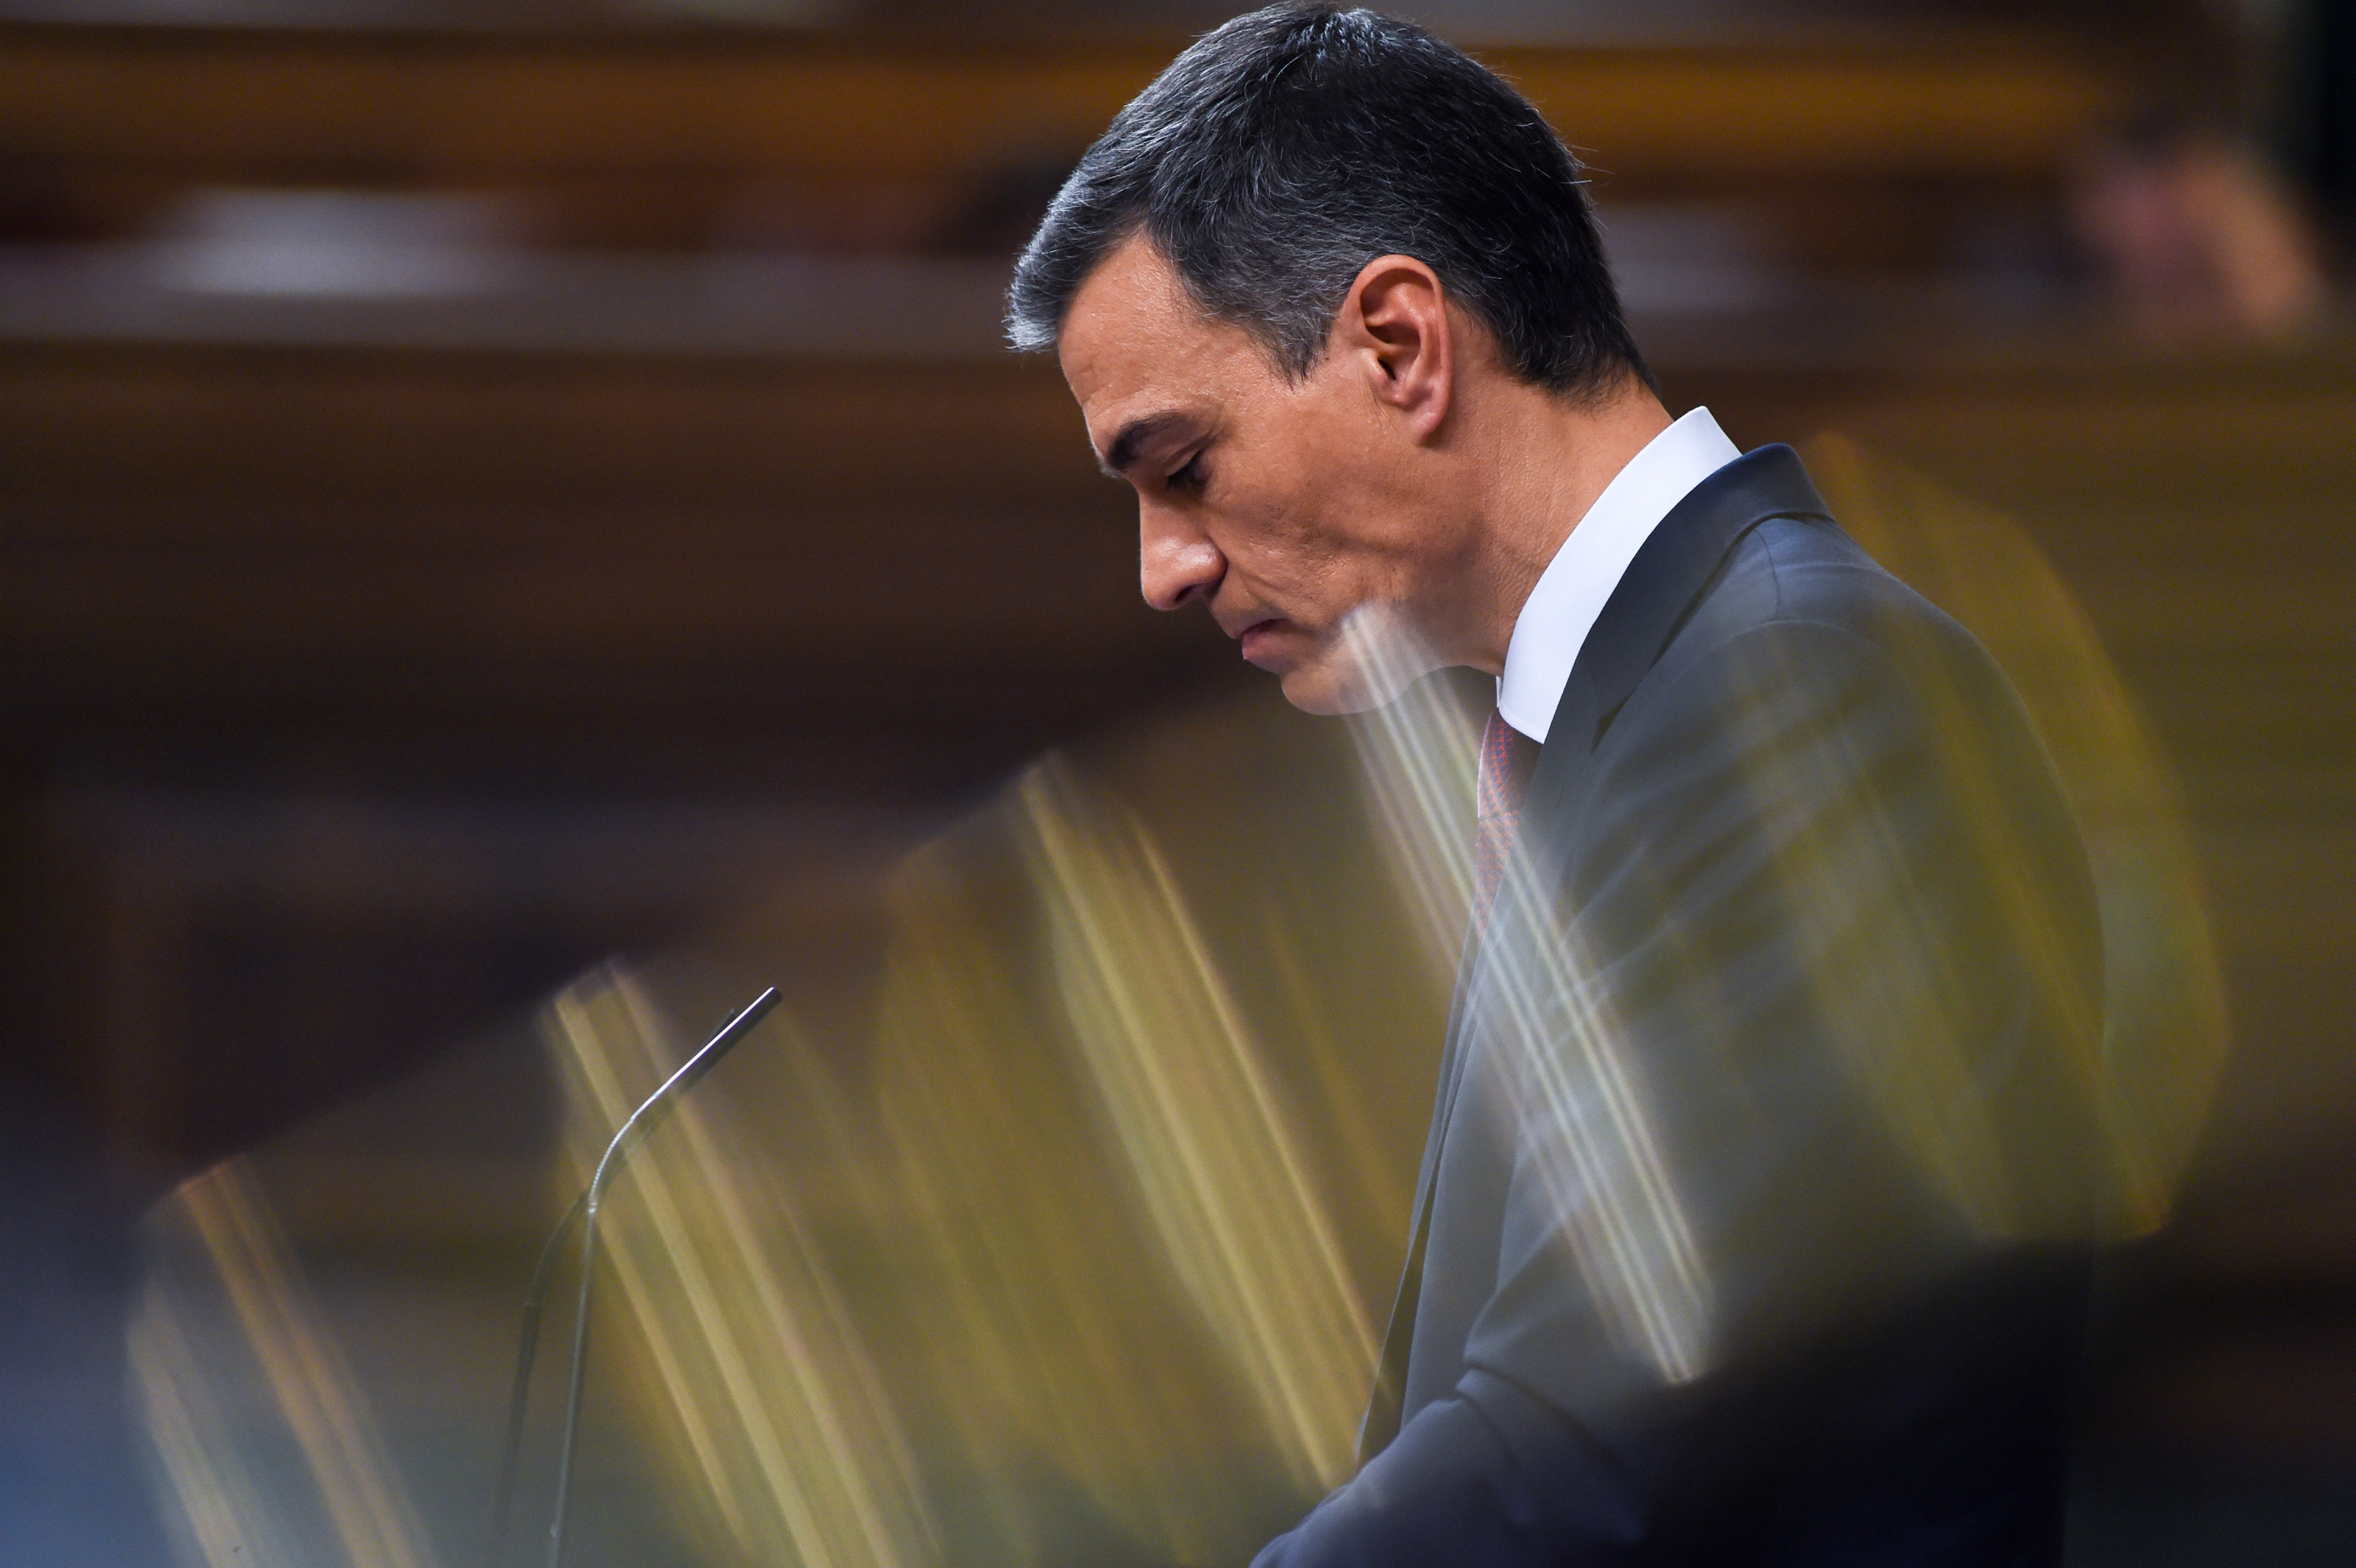 La ruptura Podemos-Sumar dificulta la legislatura a Sánchez: “Haurem de negociar més”